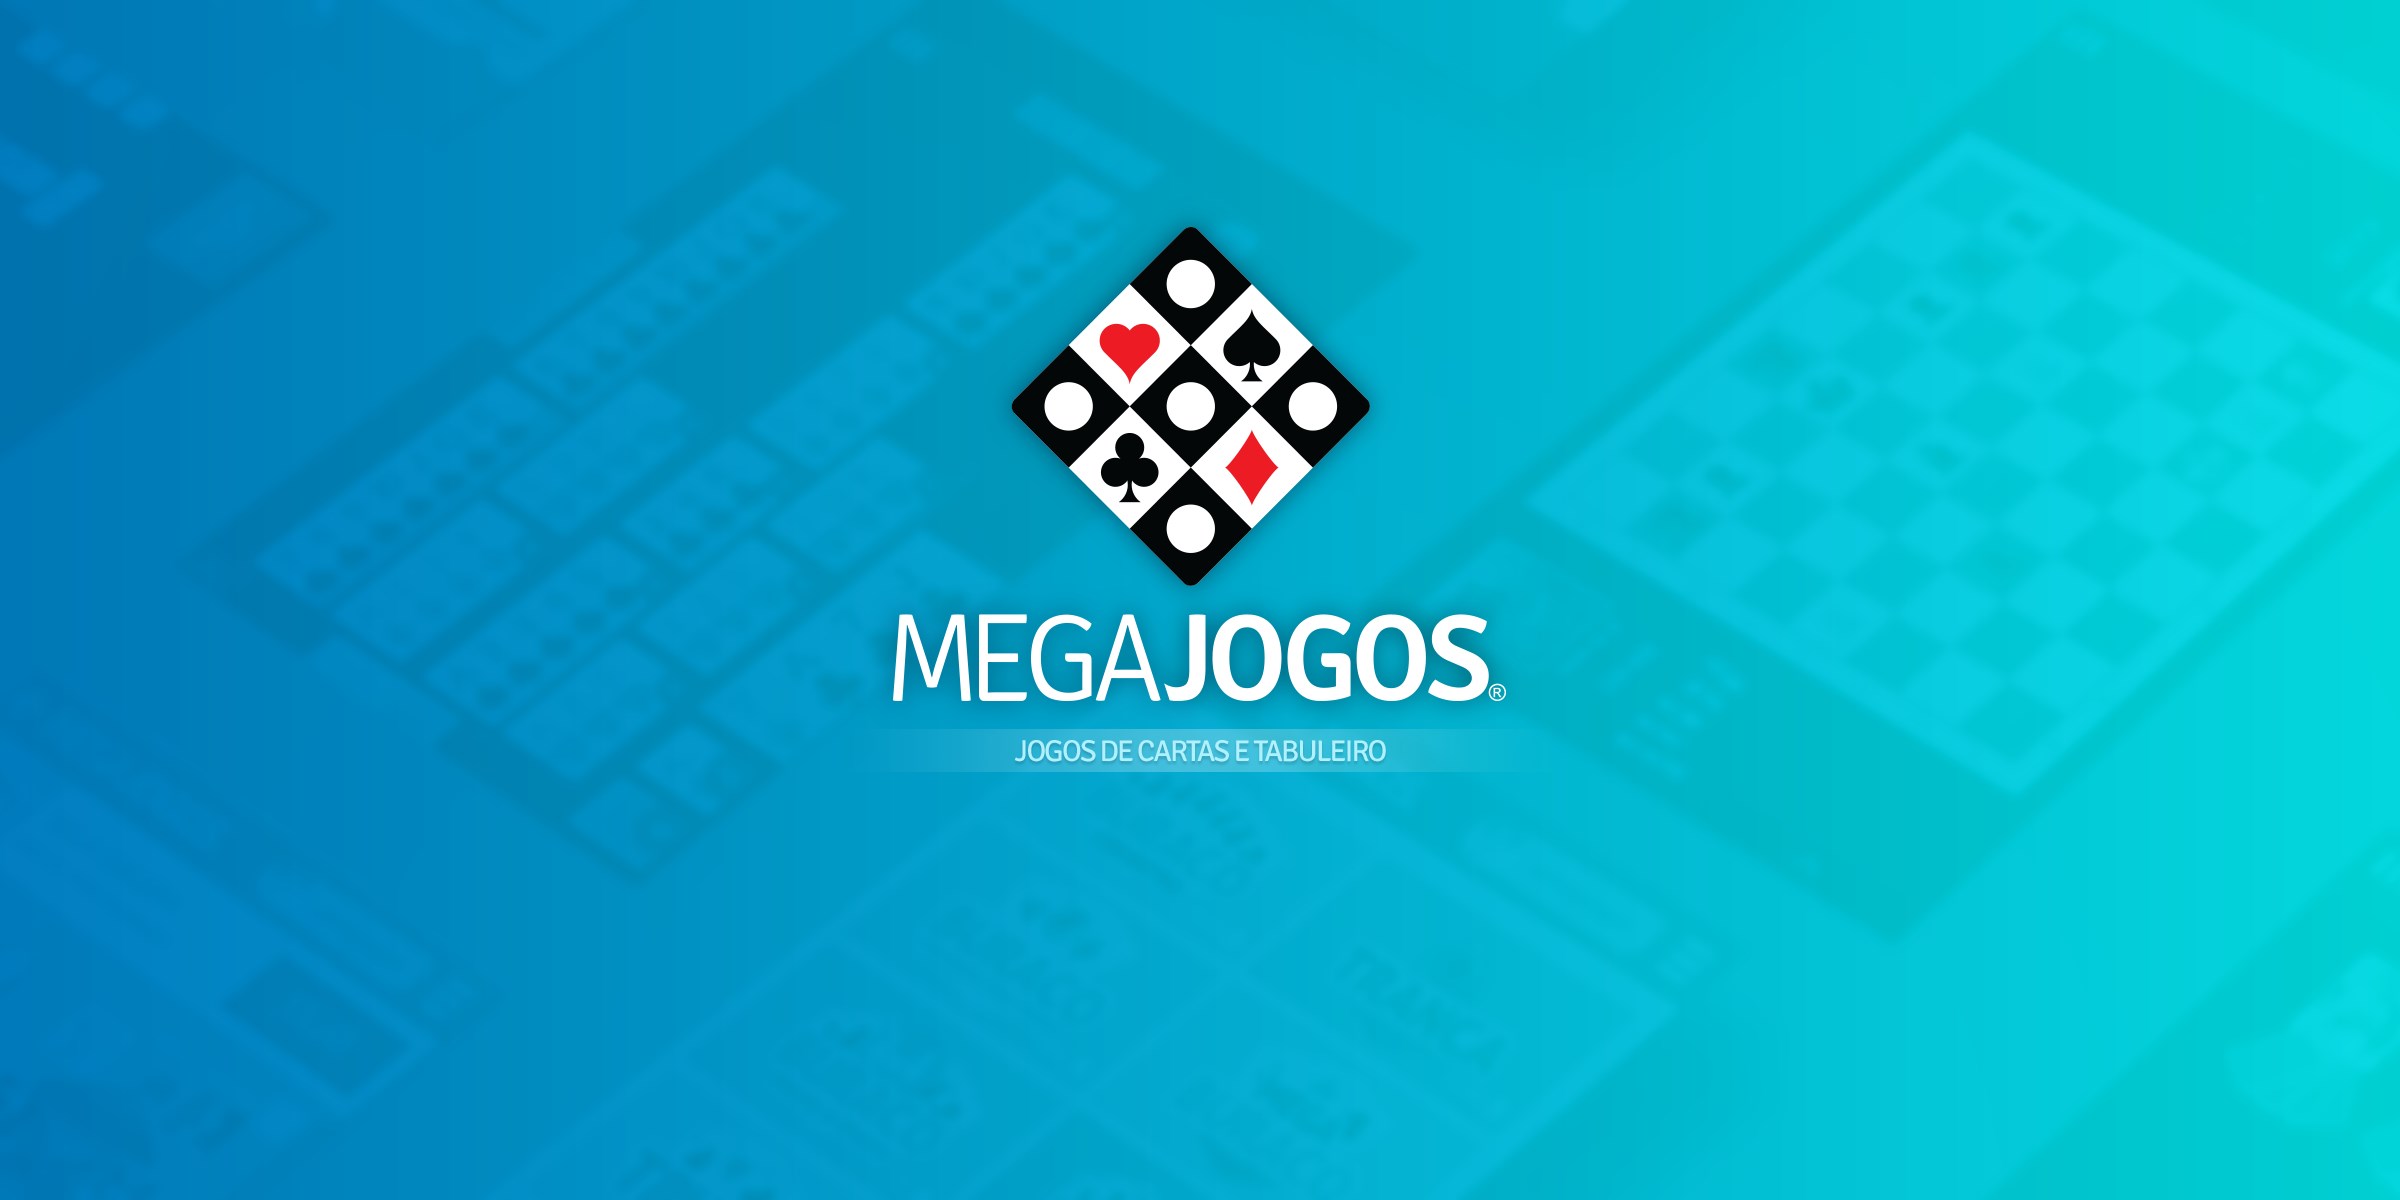 Damas Online by Megajogos Entretenimento Ltda